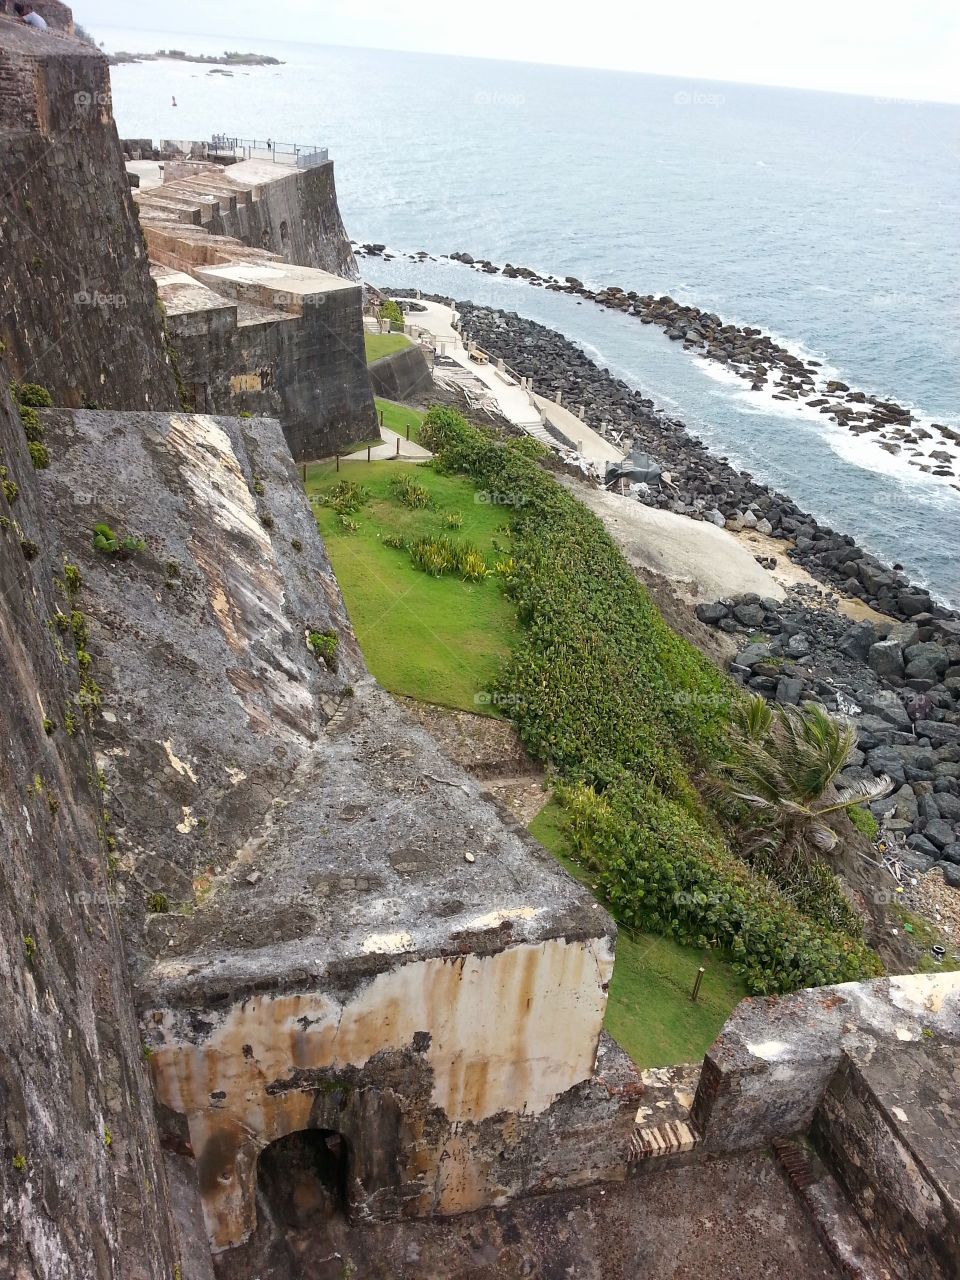 el muro. my trip to Puerto Rico